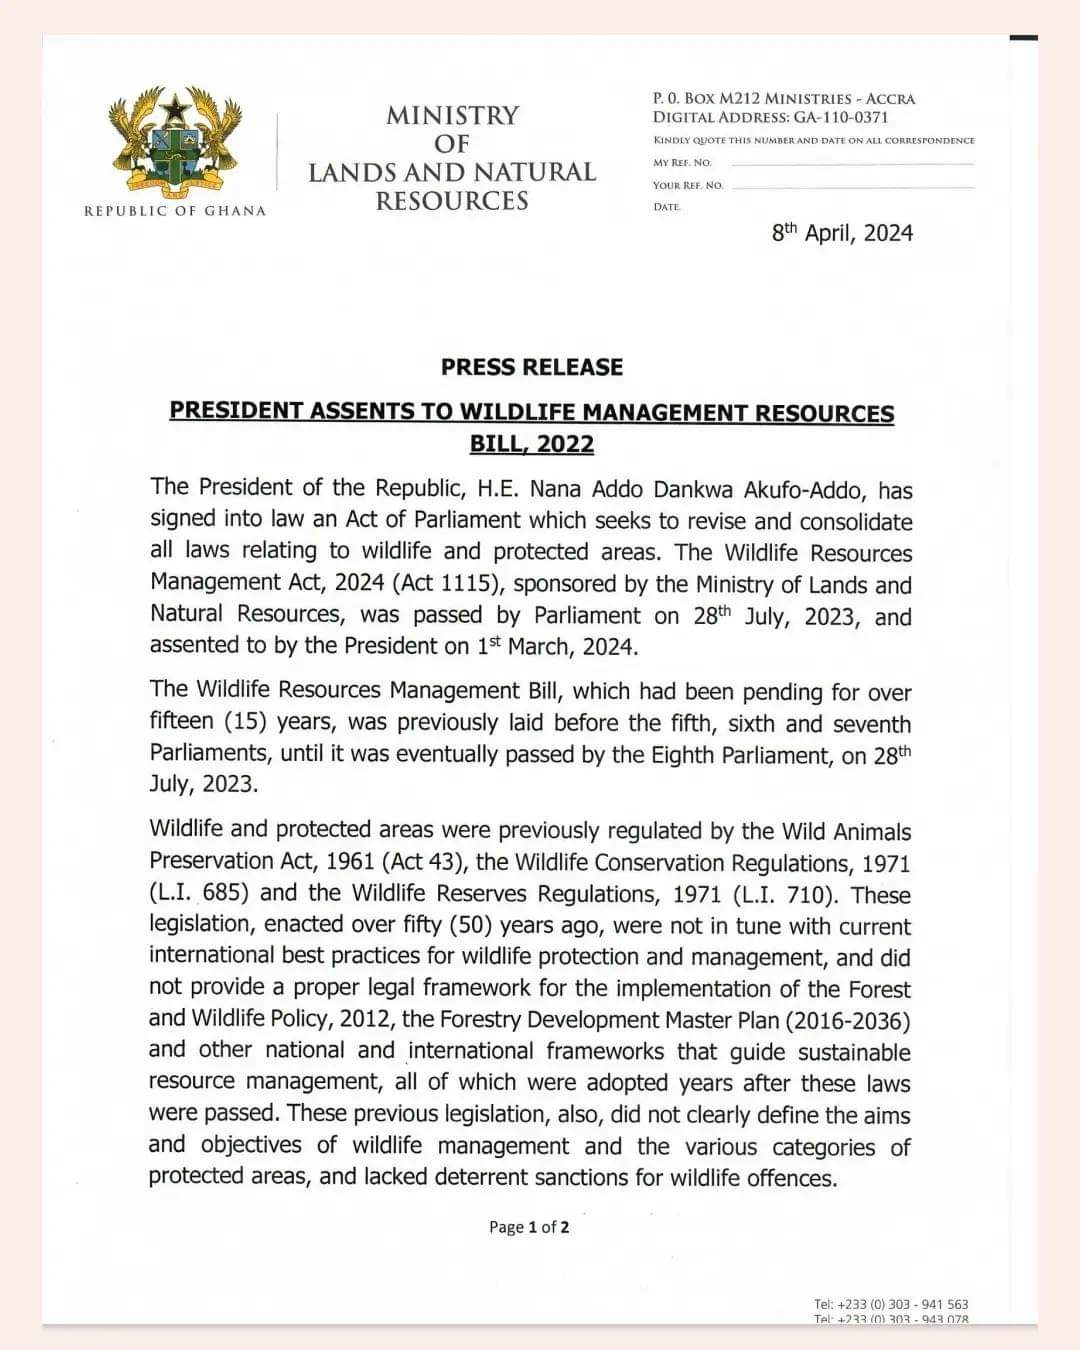 Akufo-Addo assents Wildlife Management Resources Bill 2022